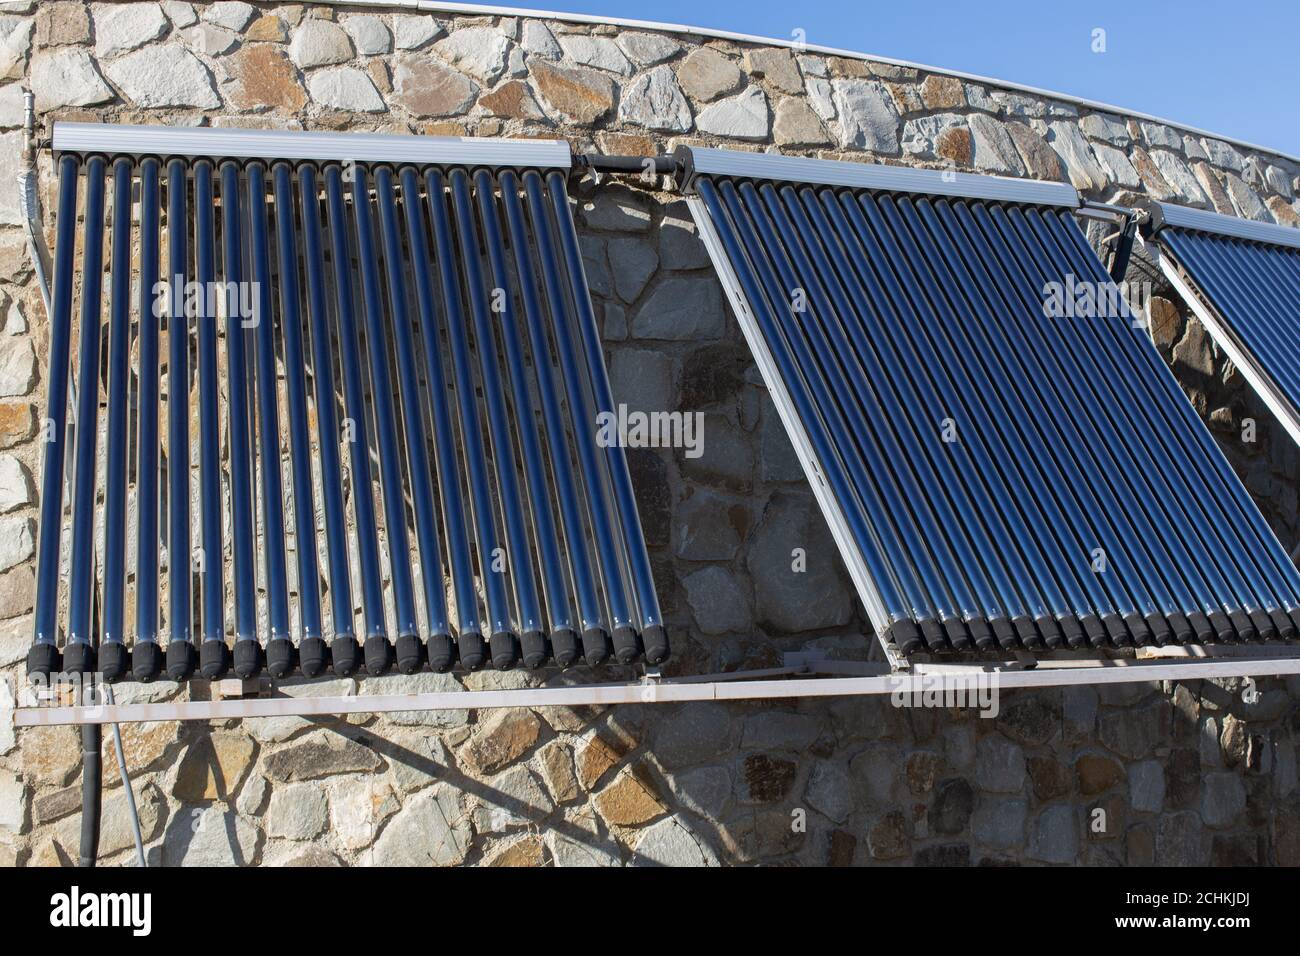 Solar-Wasser-Heizung an der Wand oder Dach des Hauses installiert. 3 Platten aus Glas koaxiale Rohre mit Wasser, um Wärme zu sammeln. Seitenansicht. Konzept-envir Stockfoto